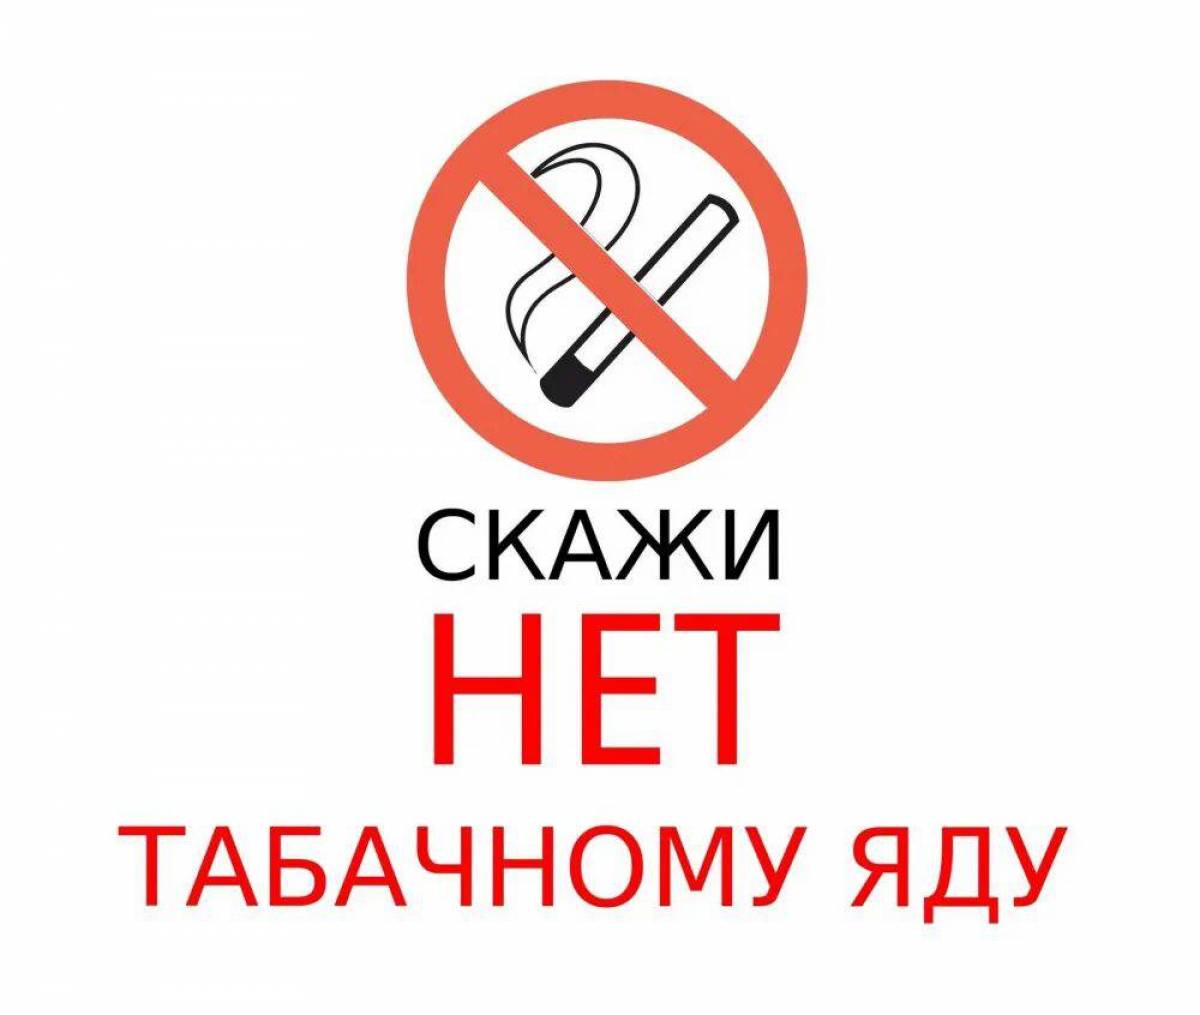 Нет курению #1